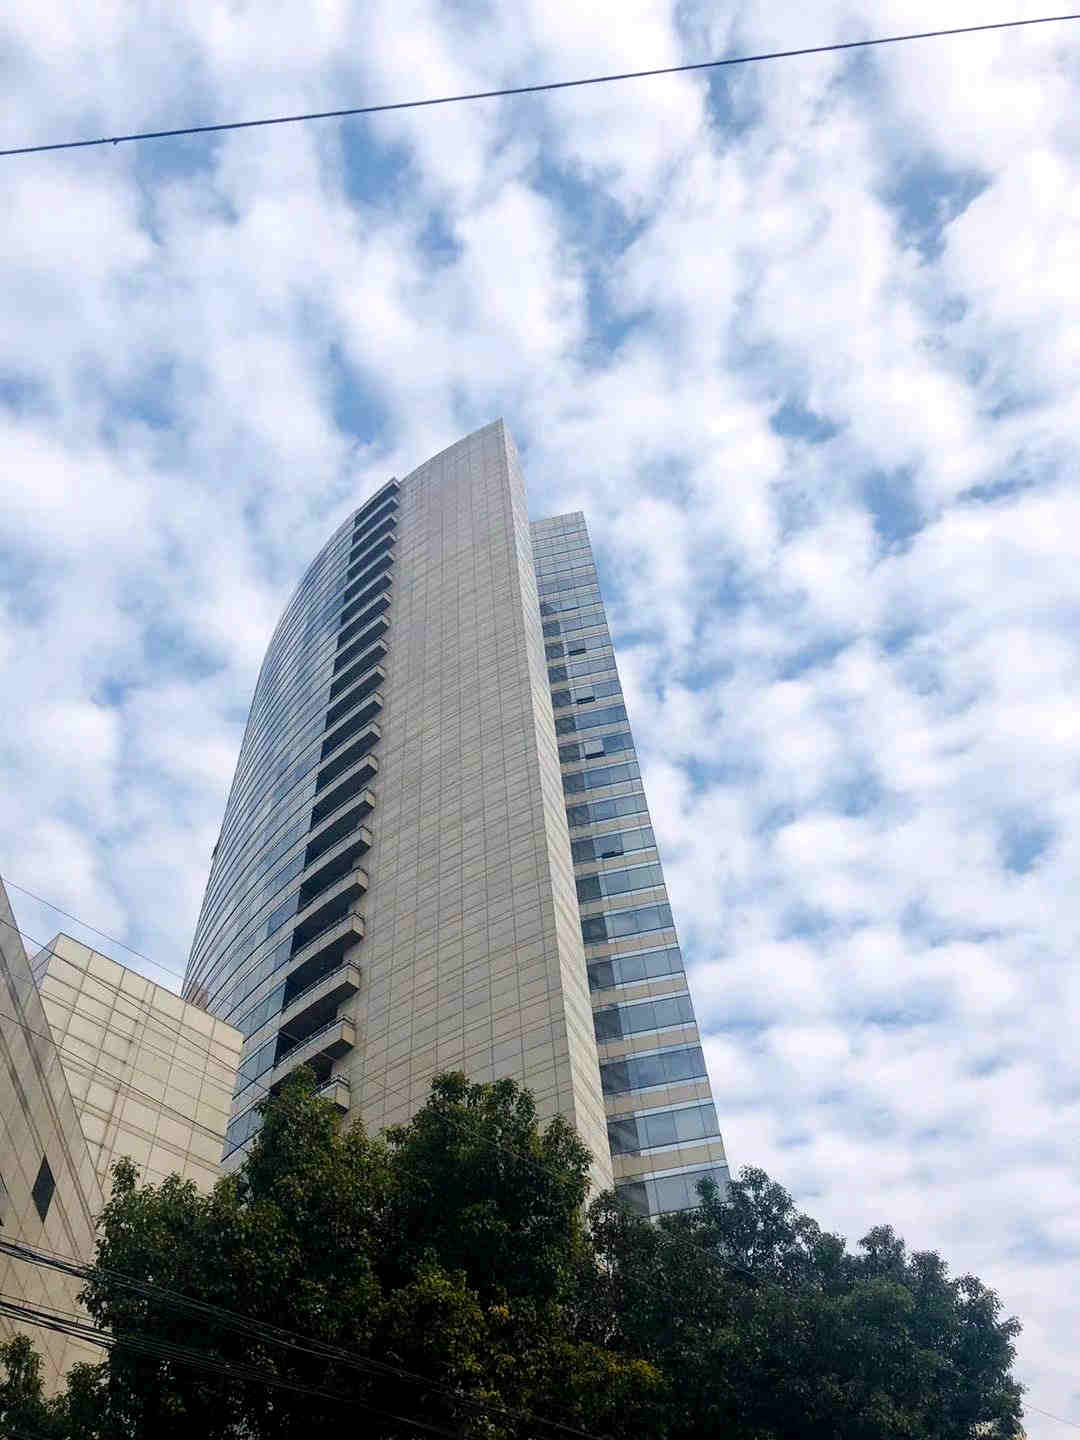 6,上海浦东发展银行股份有限公司总部办公大楼——东银大厦